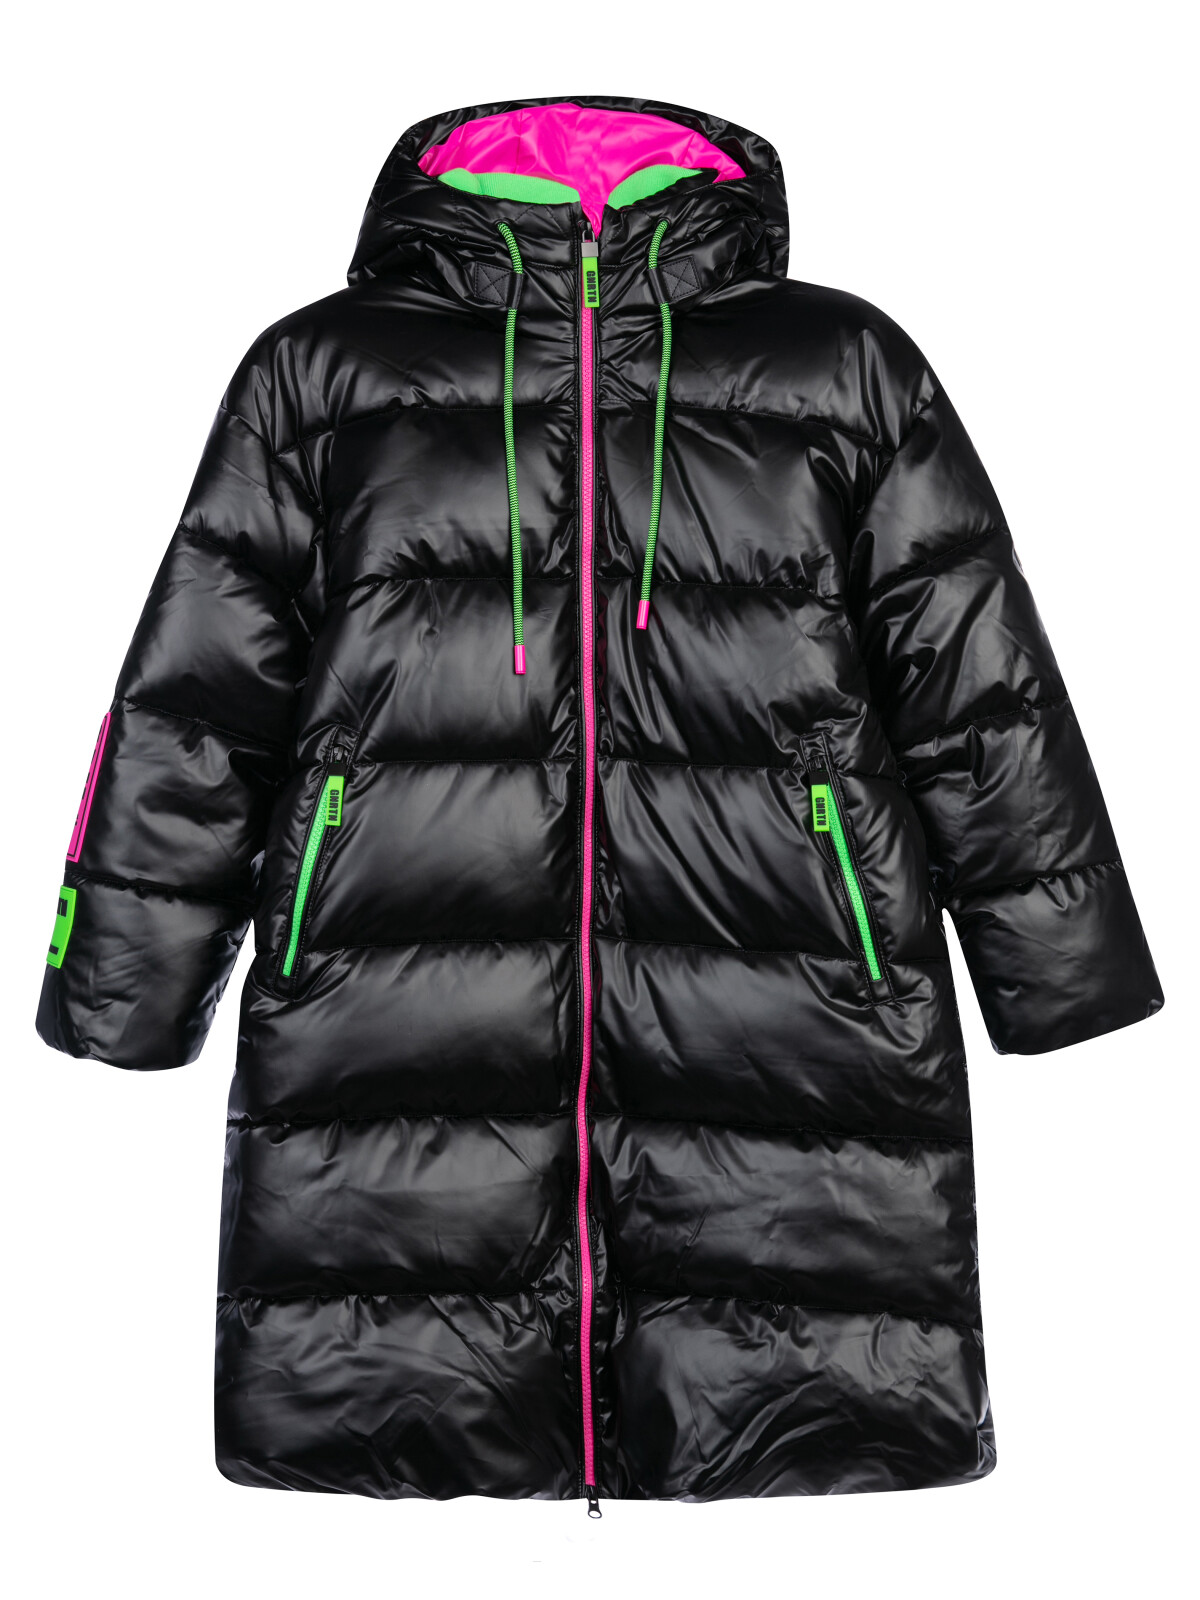 Пальто текстильное с полиуретановым покрытием для девочек PlayToday, черный,цветной, 164